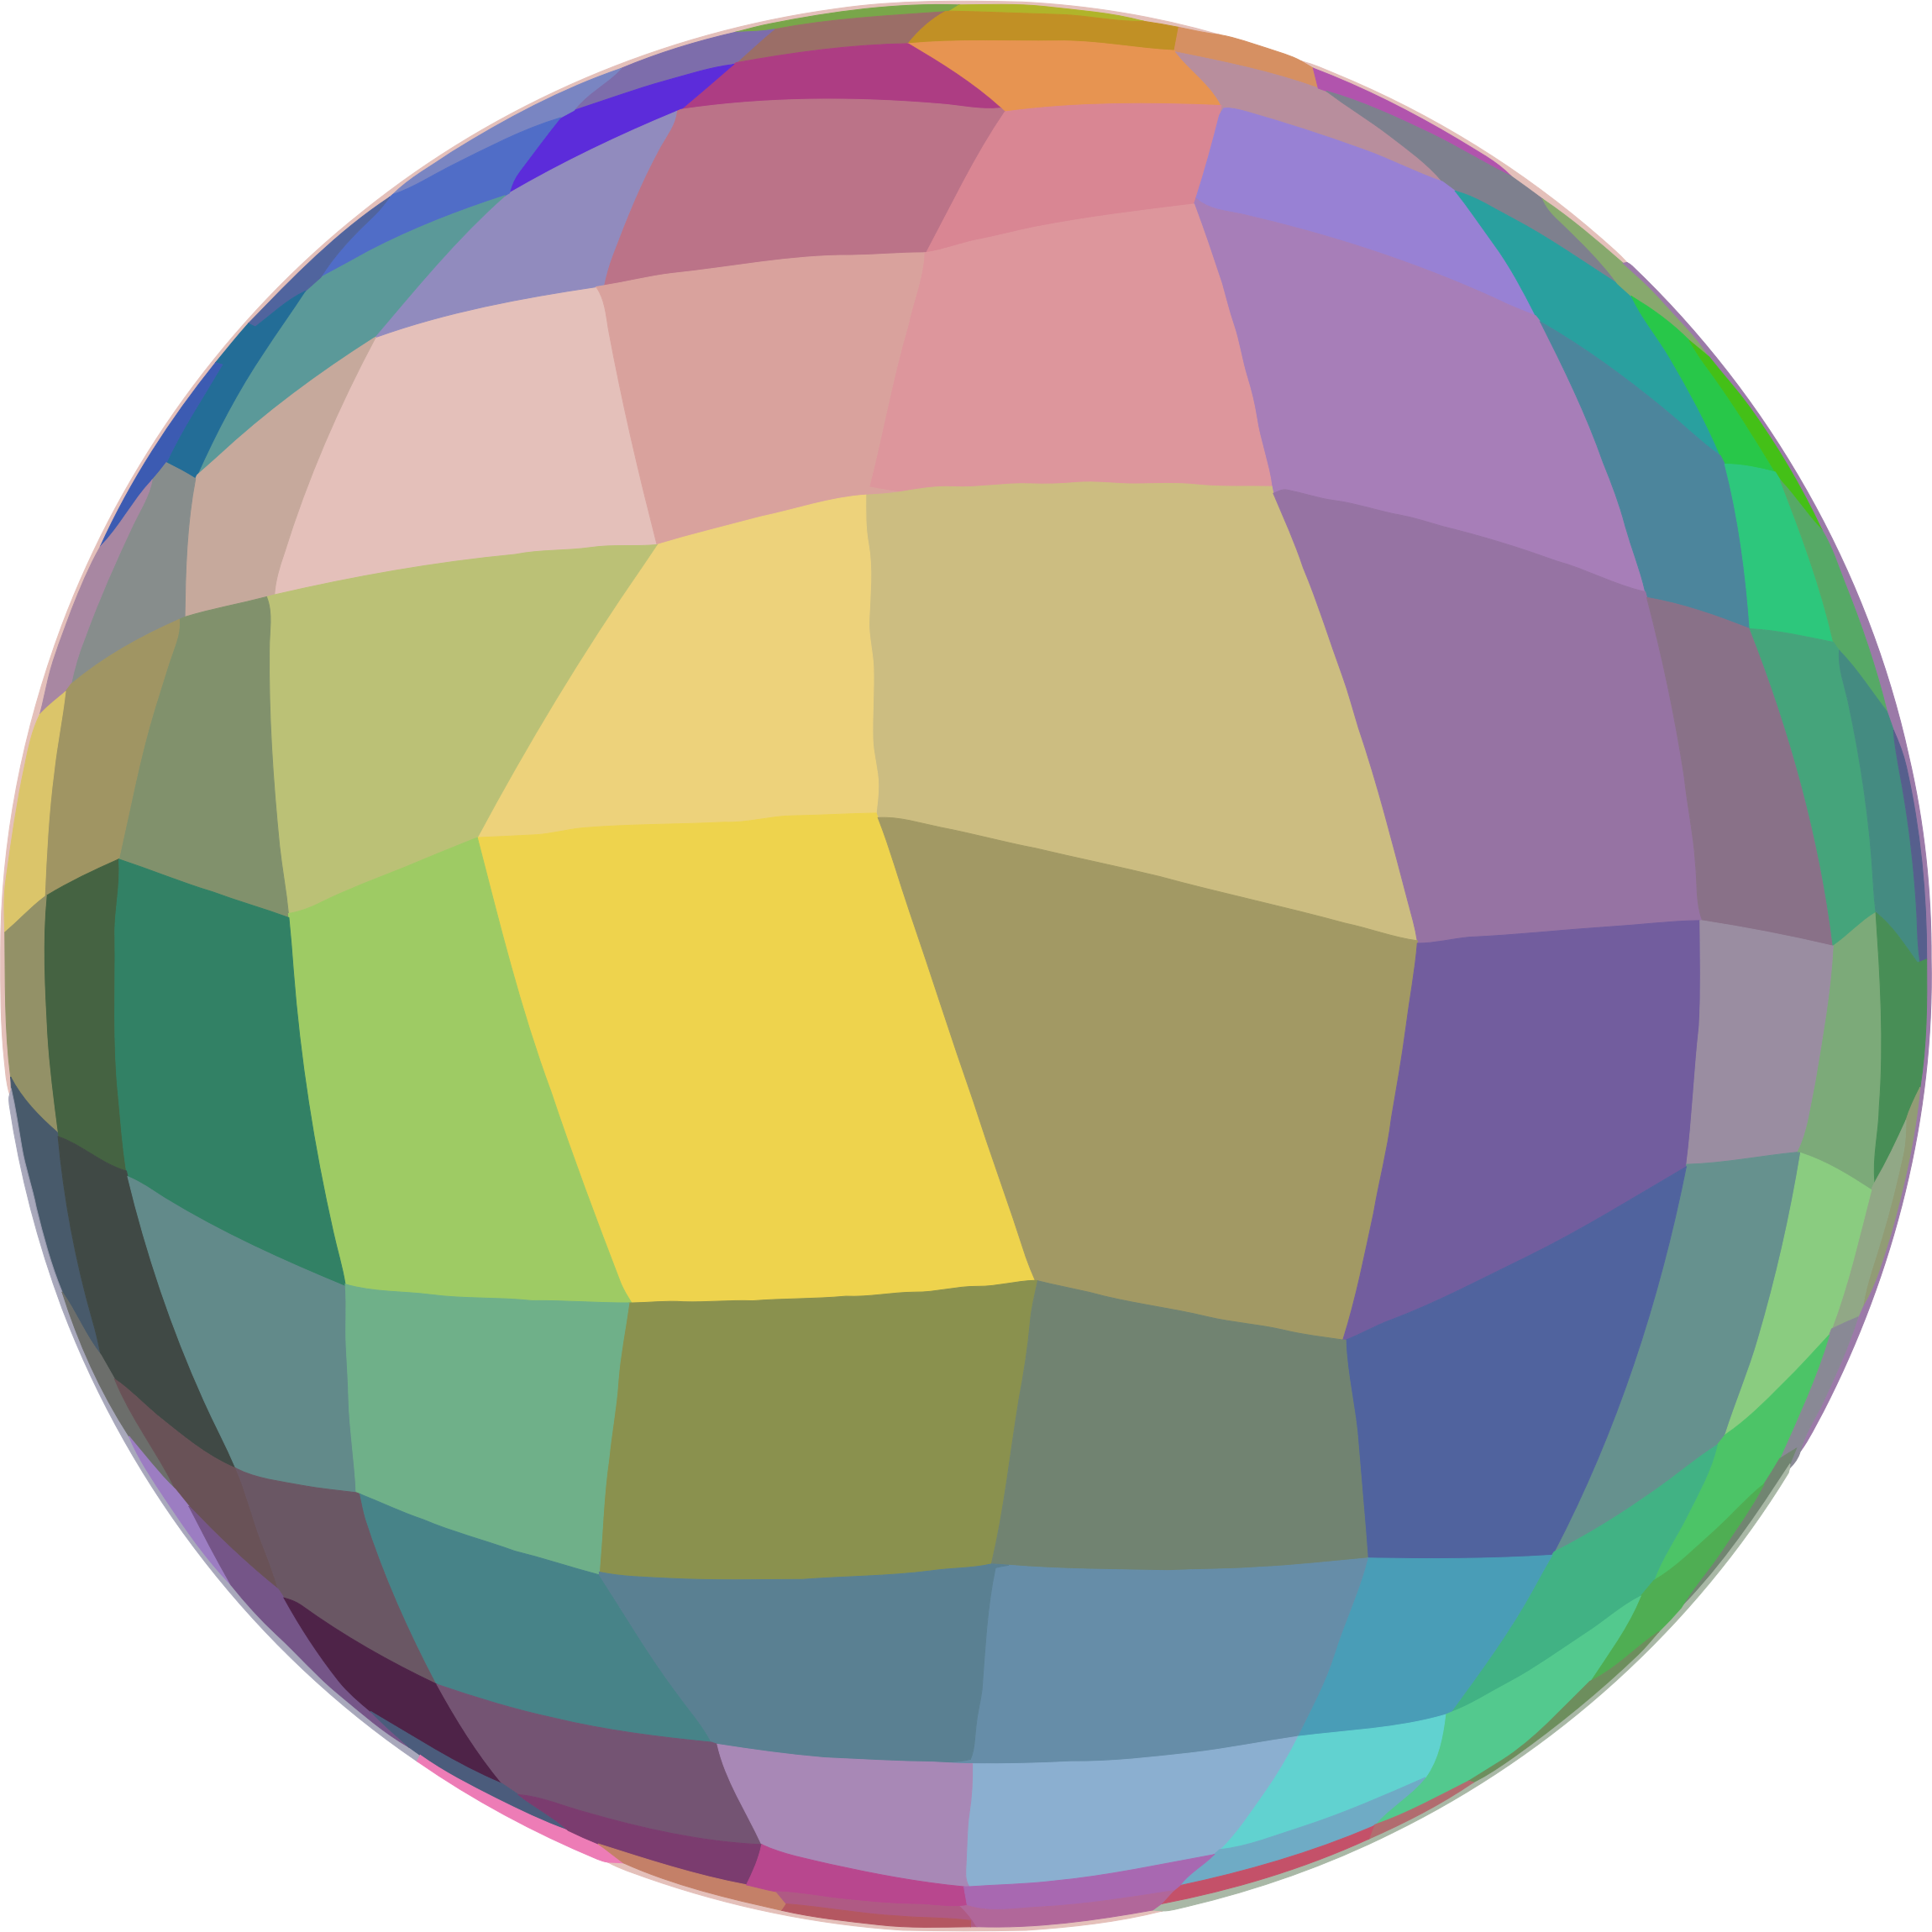 Ball On A Diet - Mosaic A Sphere (2300x2300)